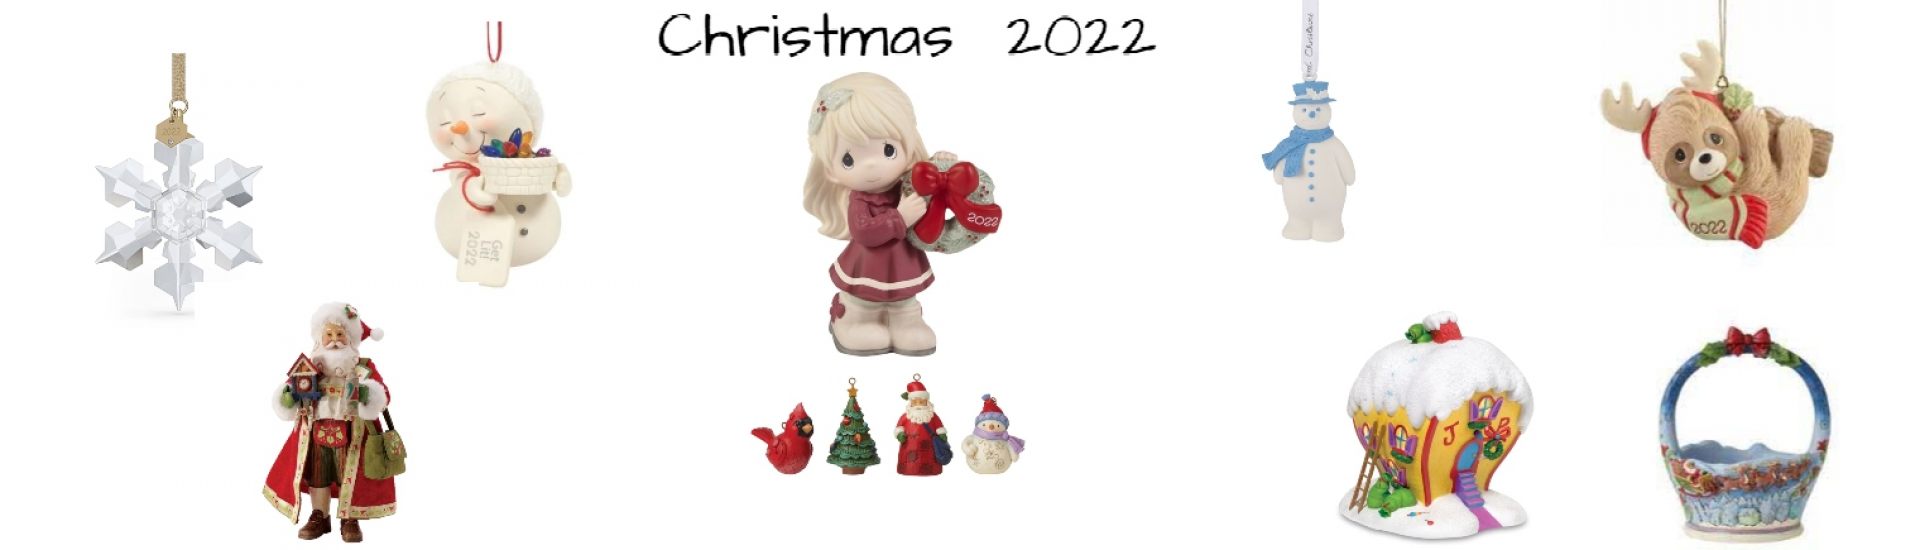 Christmas 2022 1